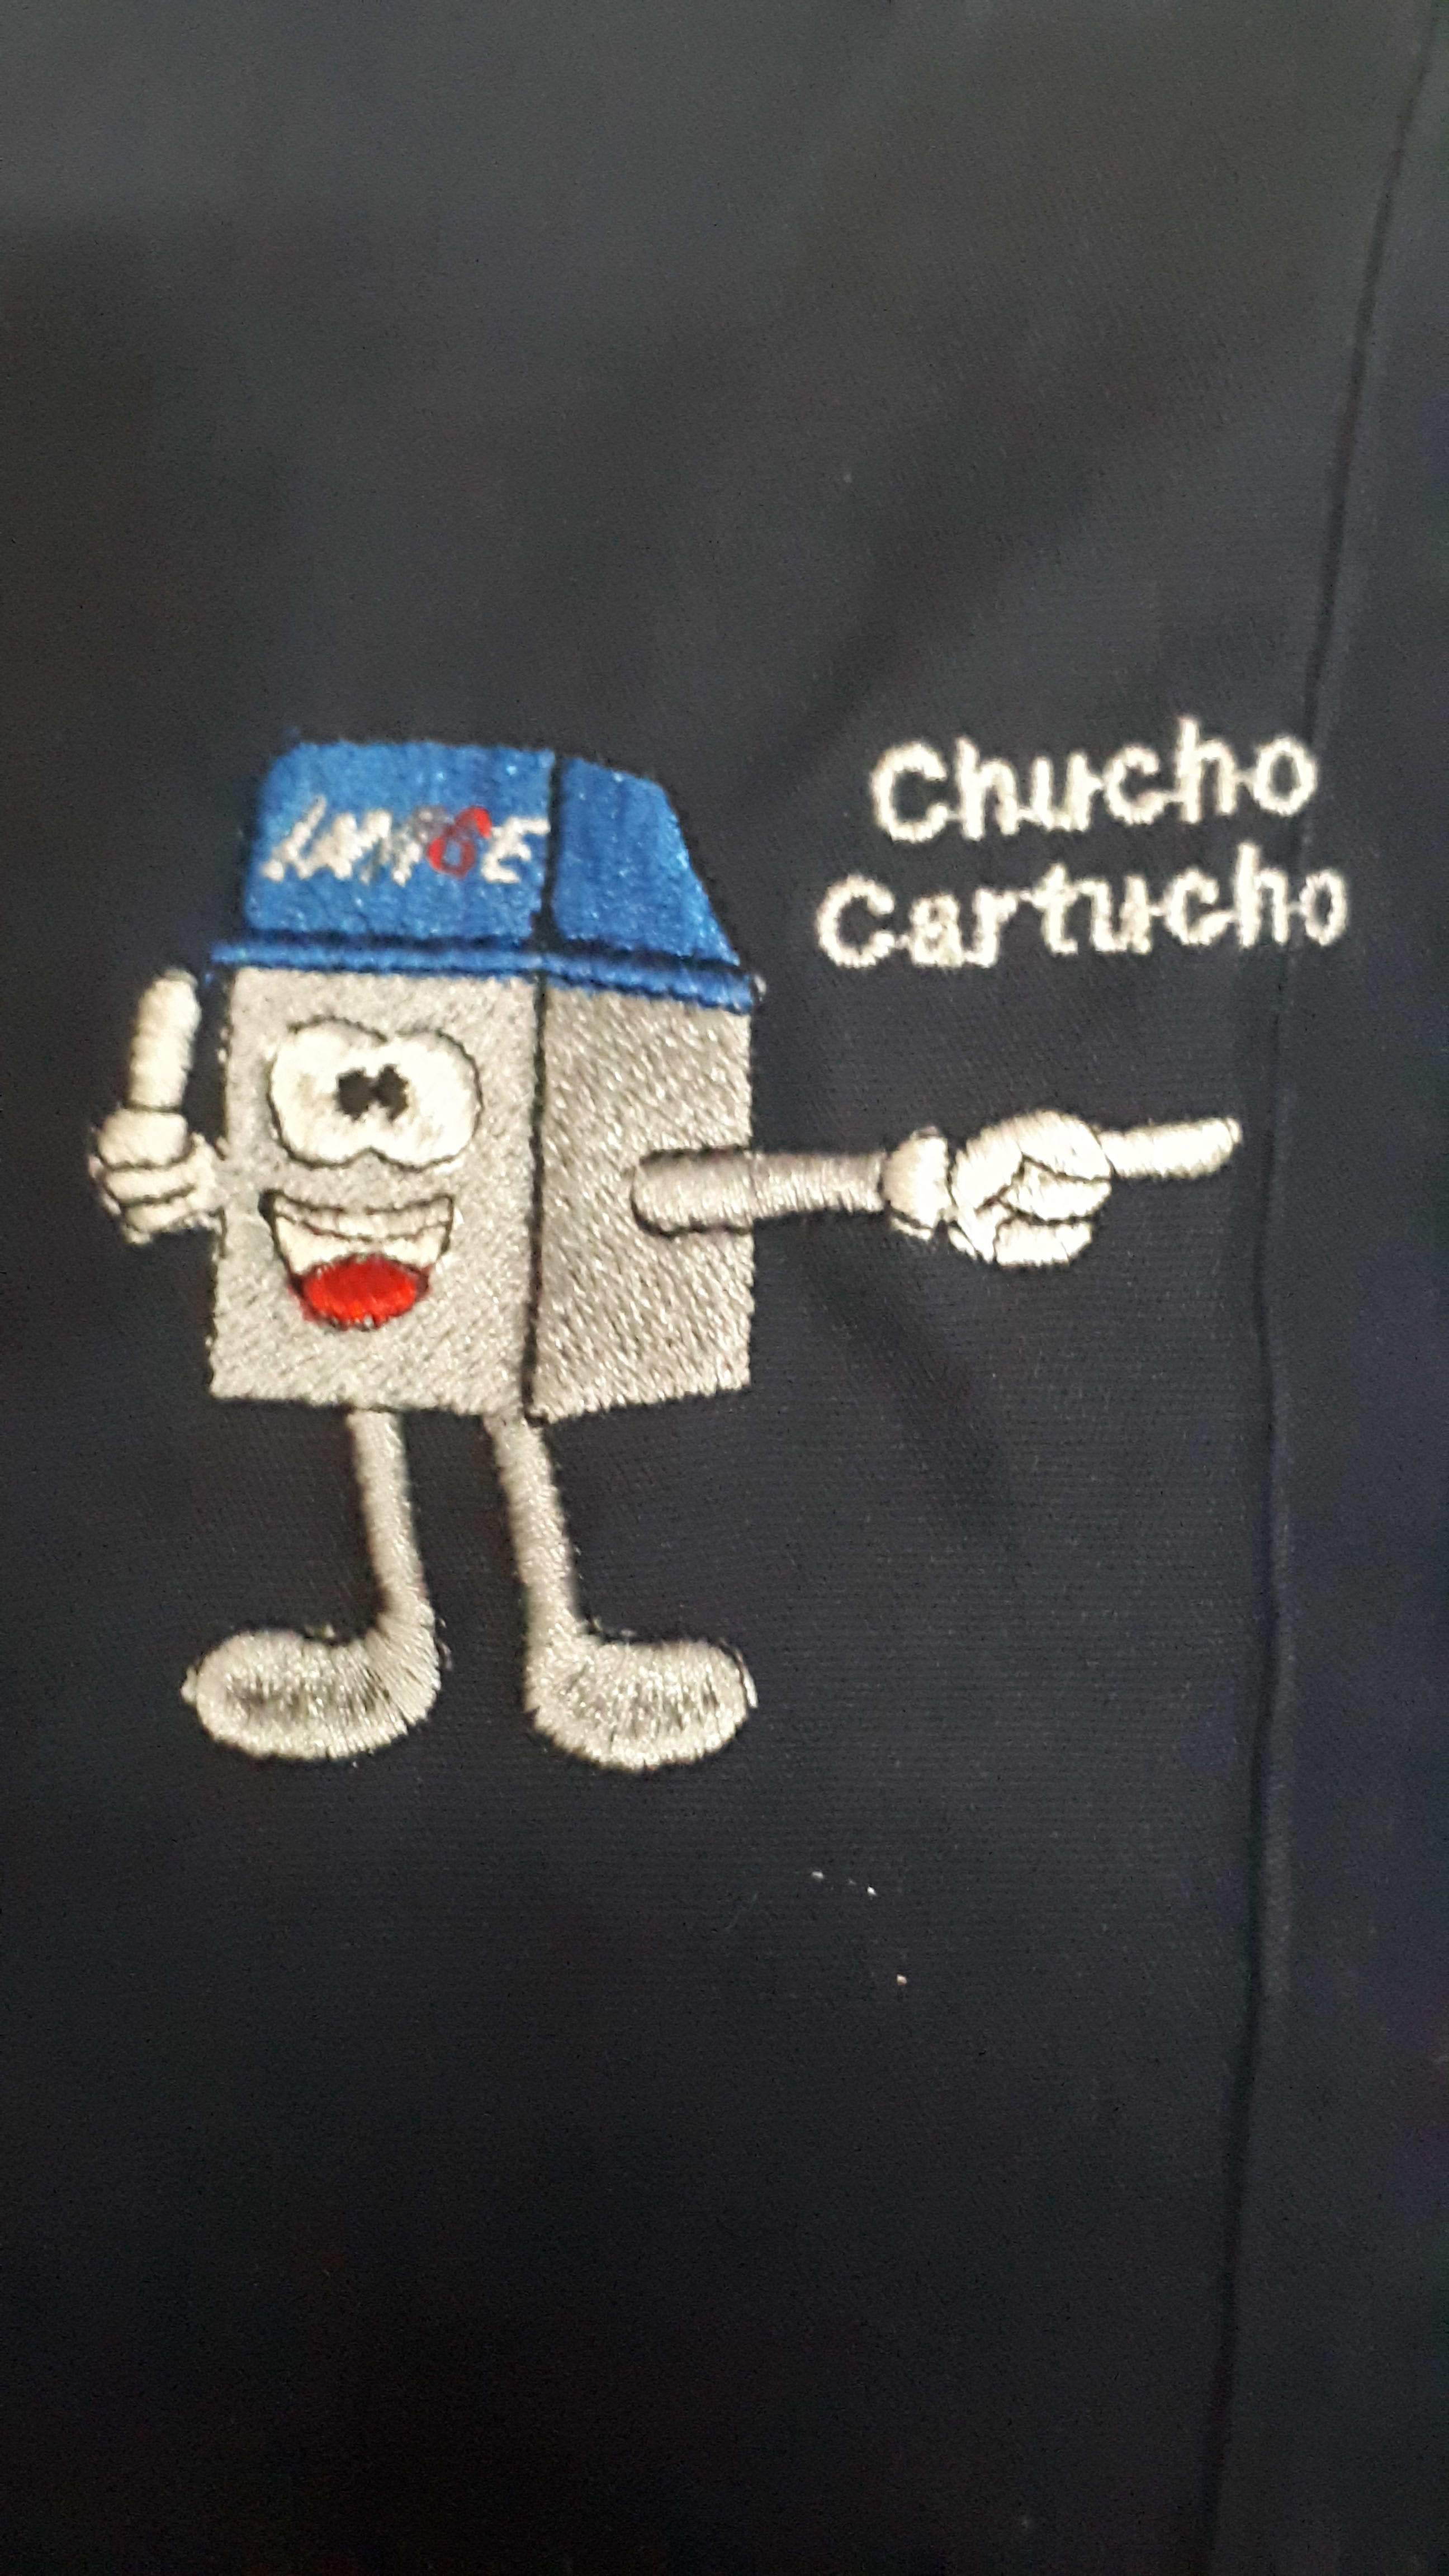 Tintas y Toner Chucho Cartucho (Imagepensiones)